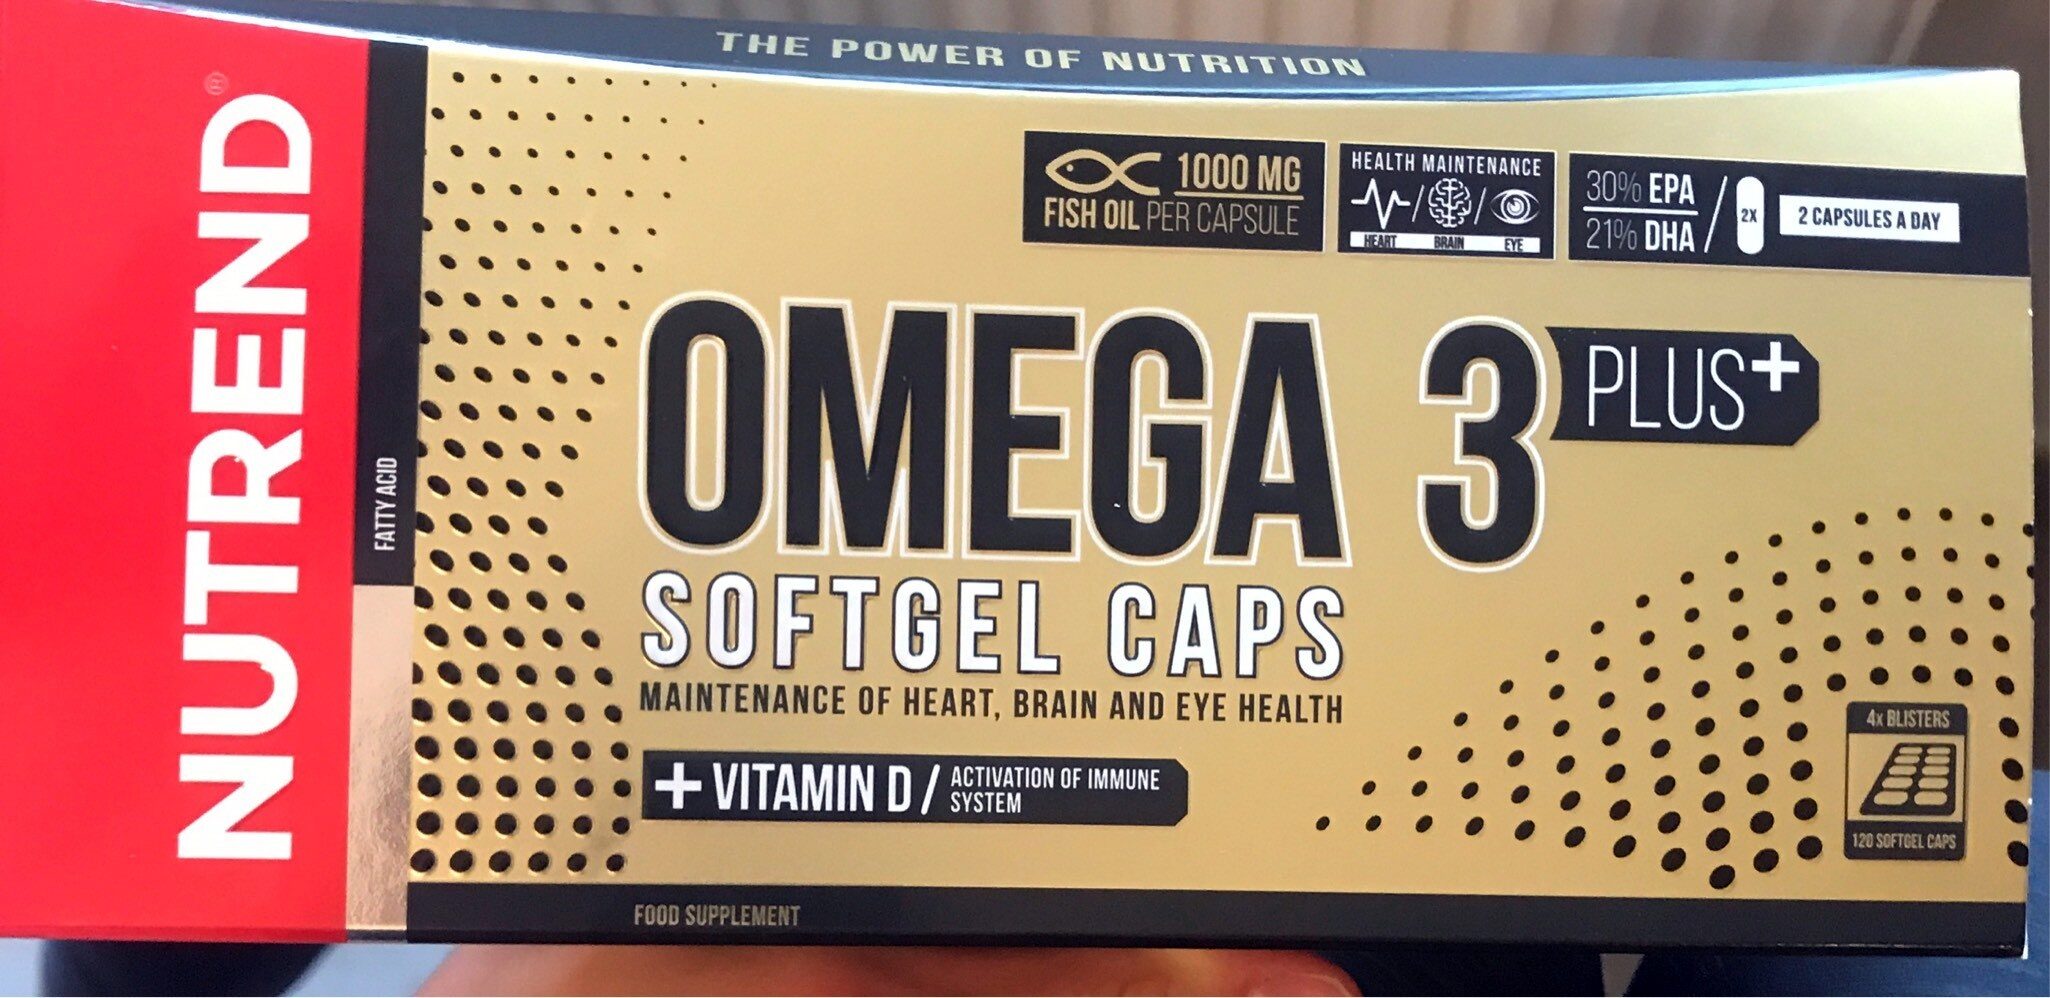 Omega 3 Plus Softgel Caps - Product - cs